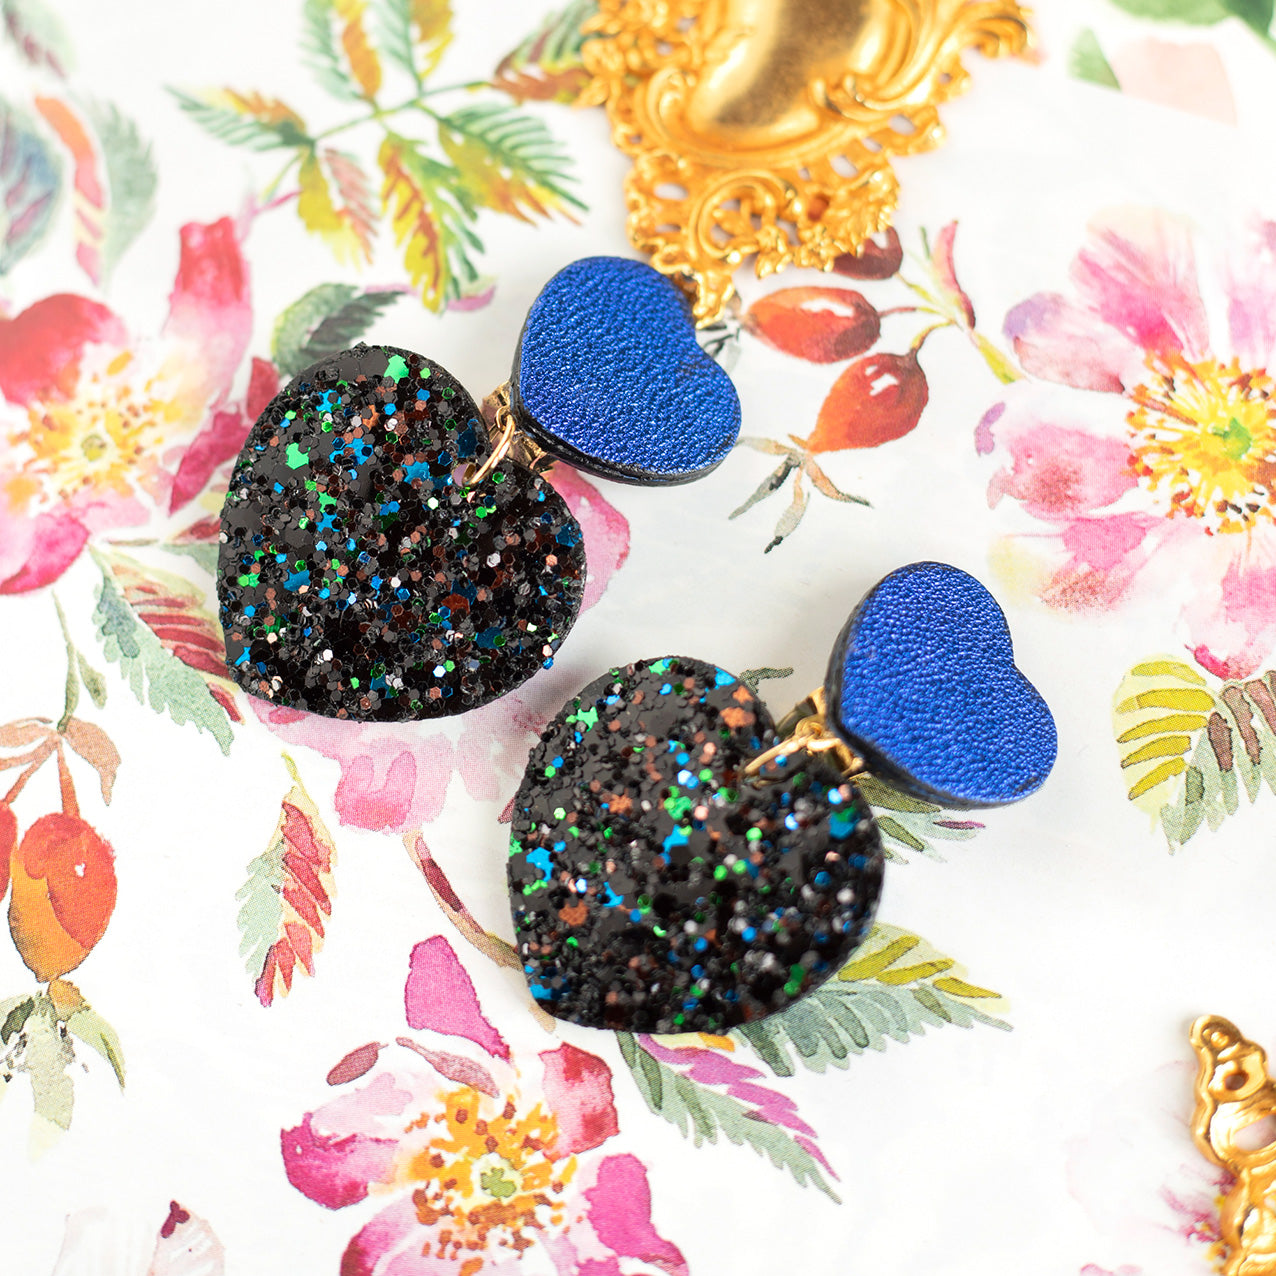 Boucles d'oreilles clips Double Coeurs - cuir bleu métallisé et paillettes noires